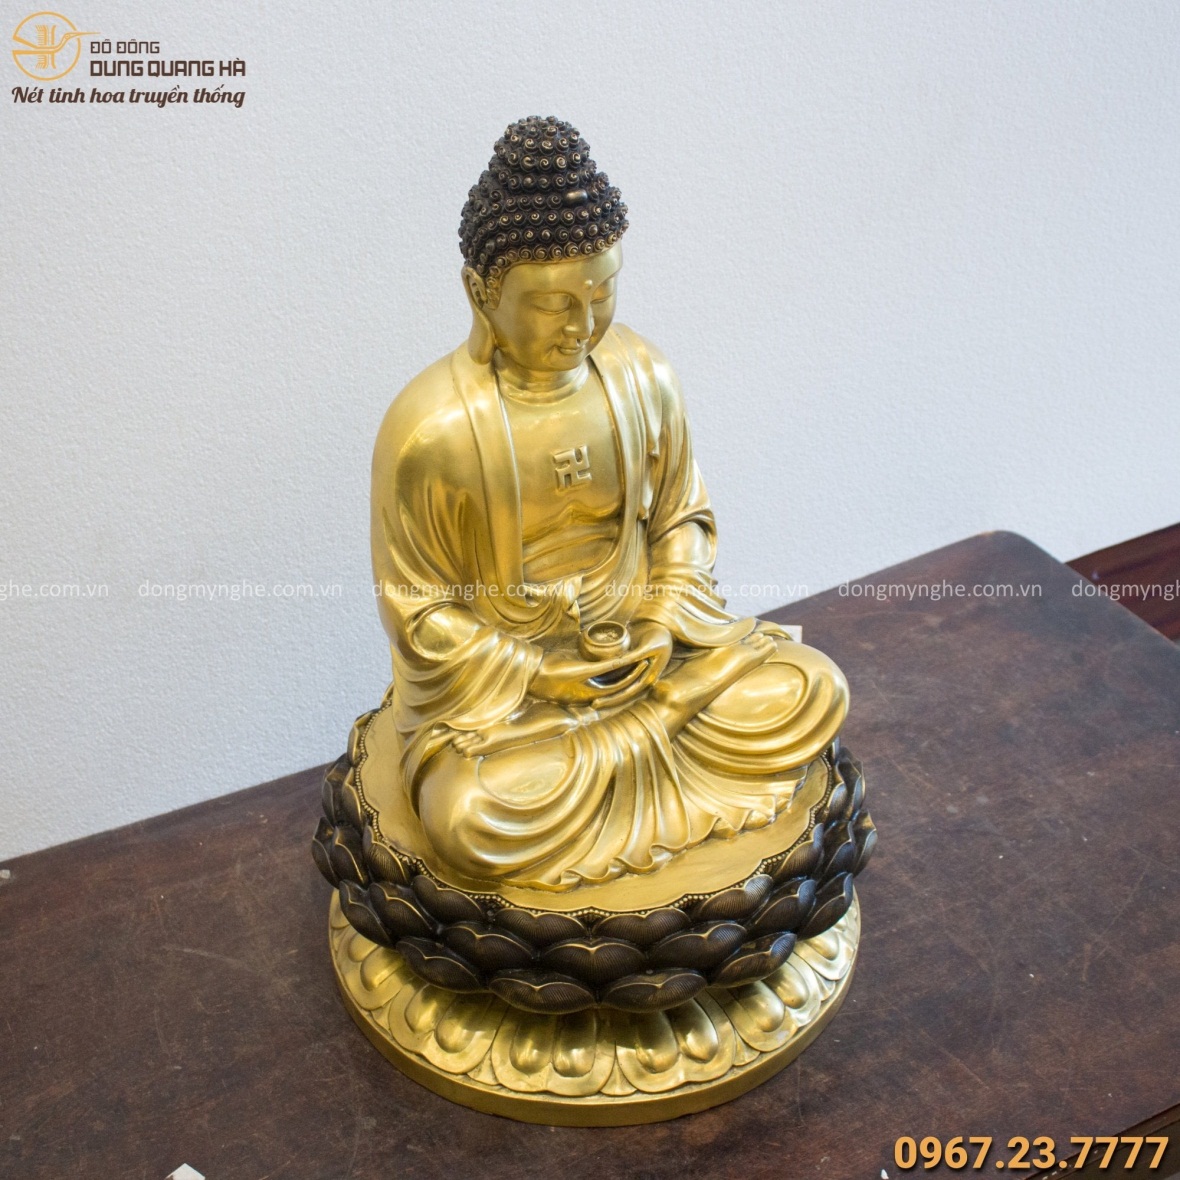 Tượng Phật A Di Đà ngồi trên đài sen cao 60cm bằng đồng vàng